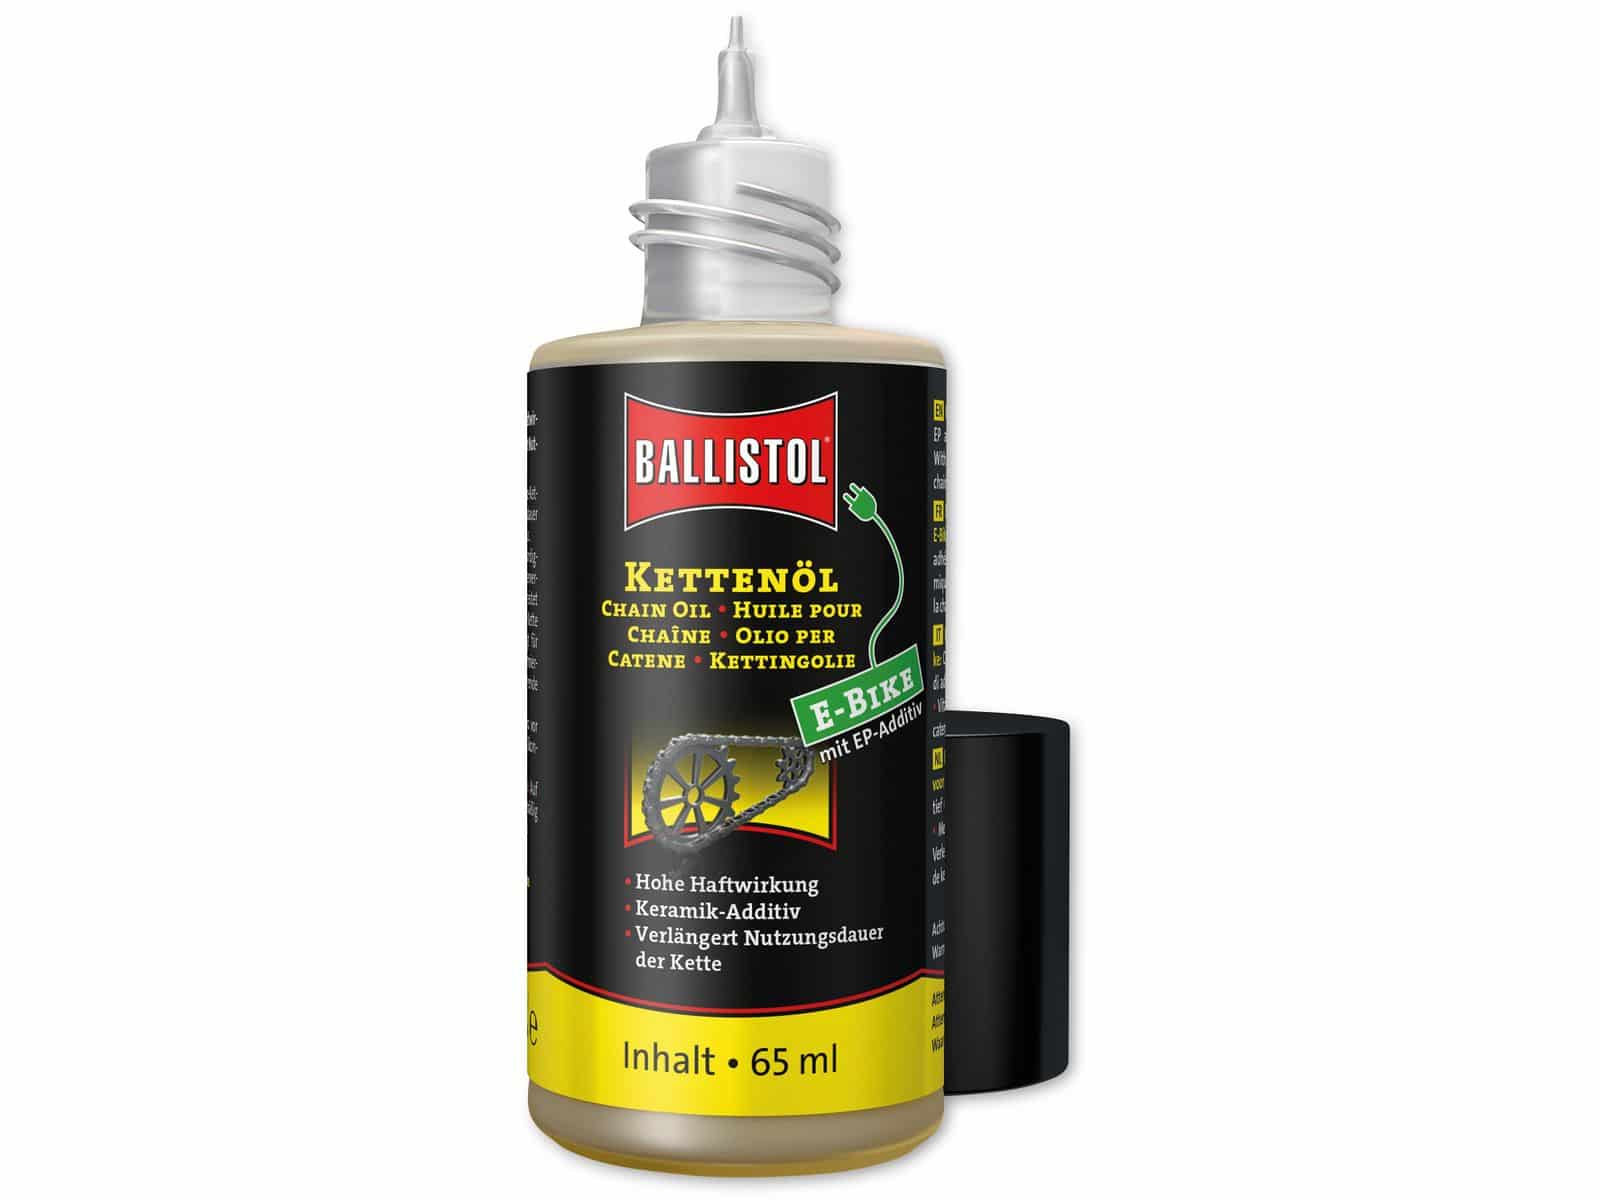 BALLISTOL E-Bike Kettenöl, 65 ml von Ballistol